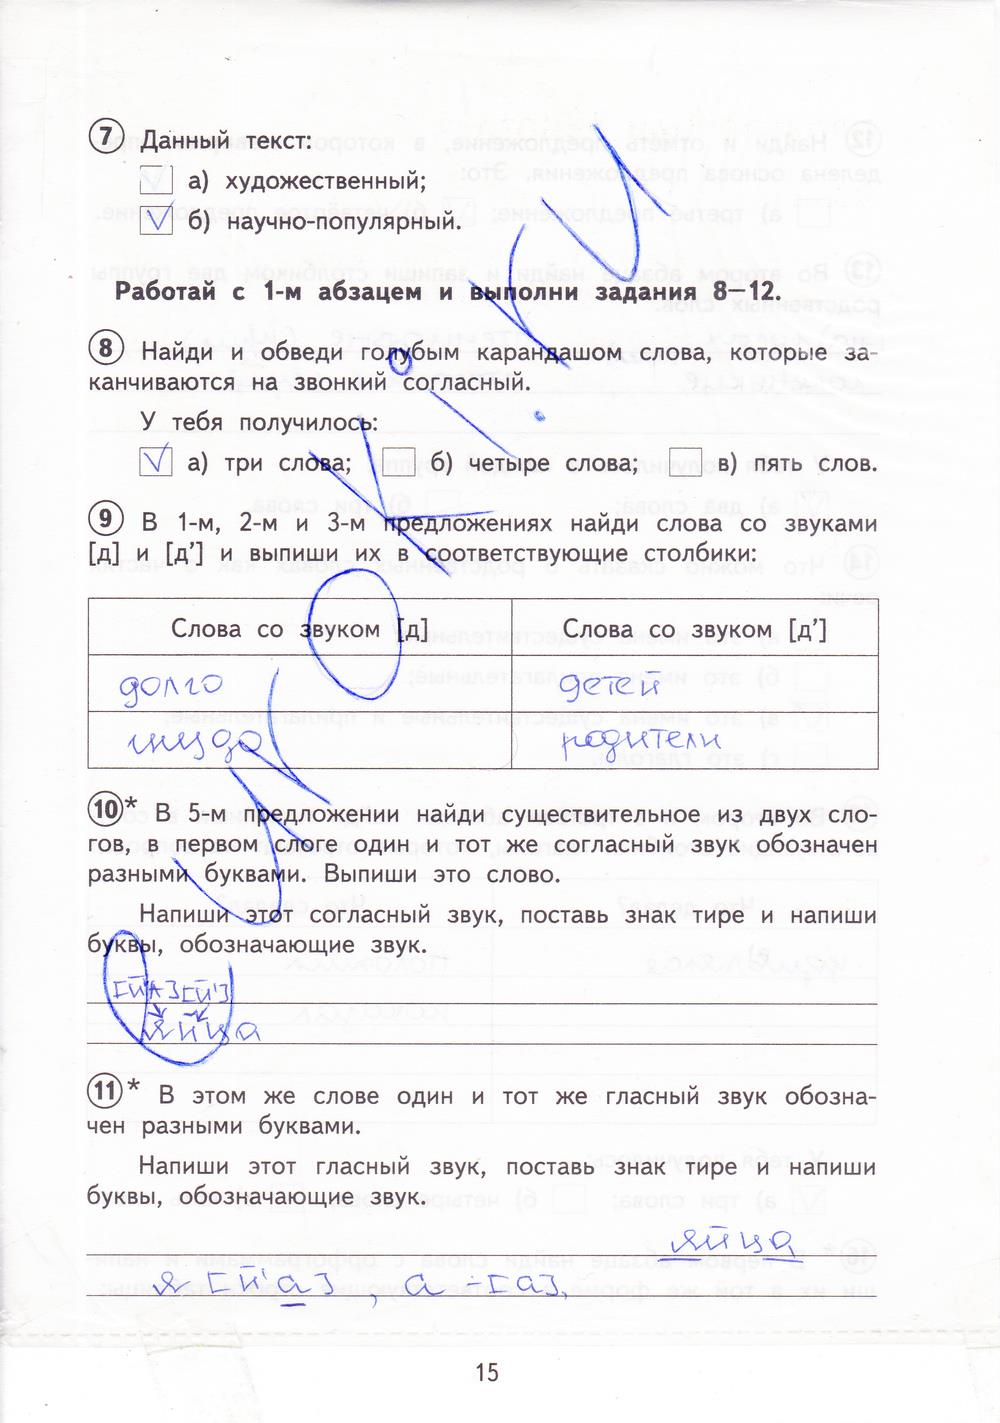 гдз 3 класс тетрадь для проверочных работ страница 15 русский язык Лаврова